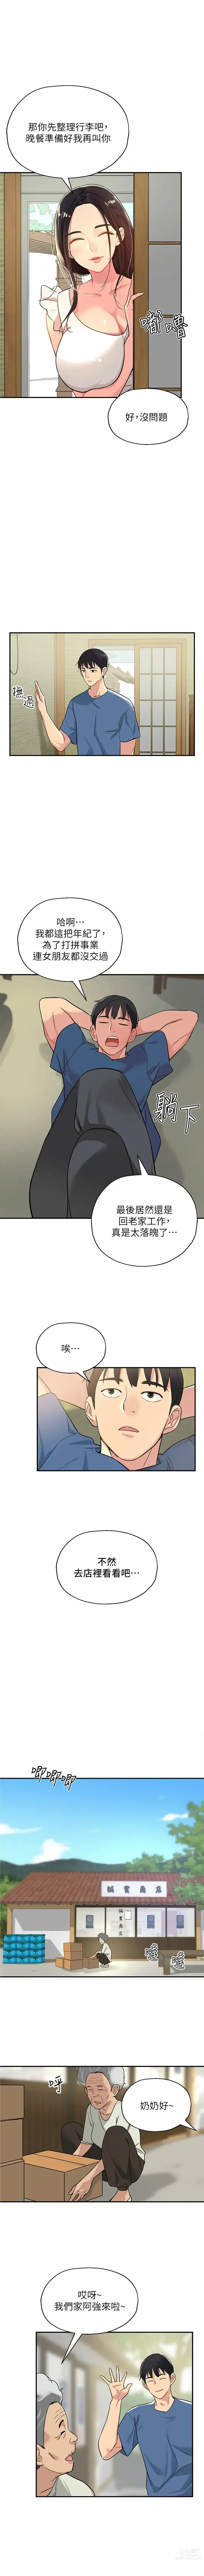 Page 8 of manga 洞洞杂货铺/Glory Hole Shop 1-71